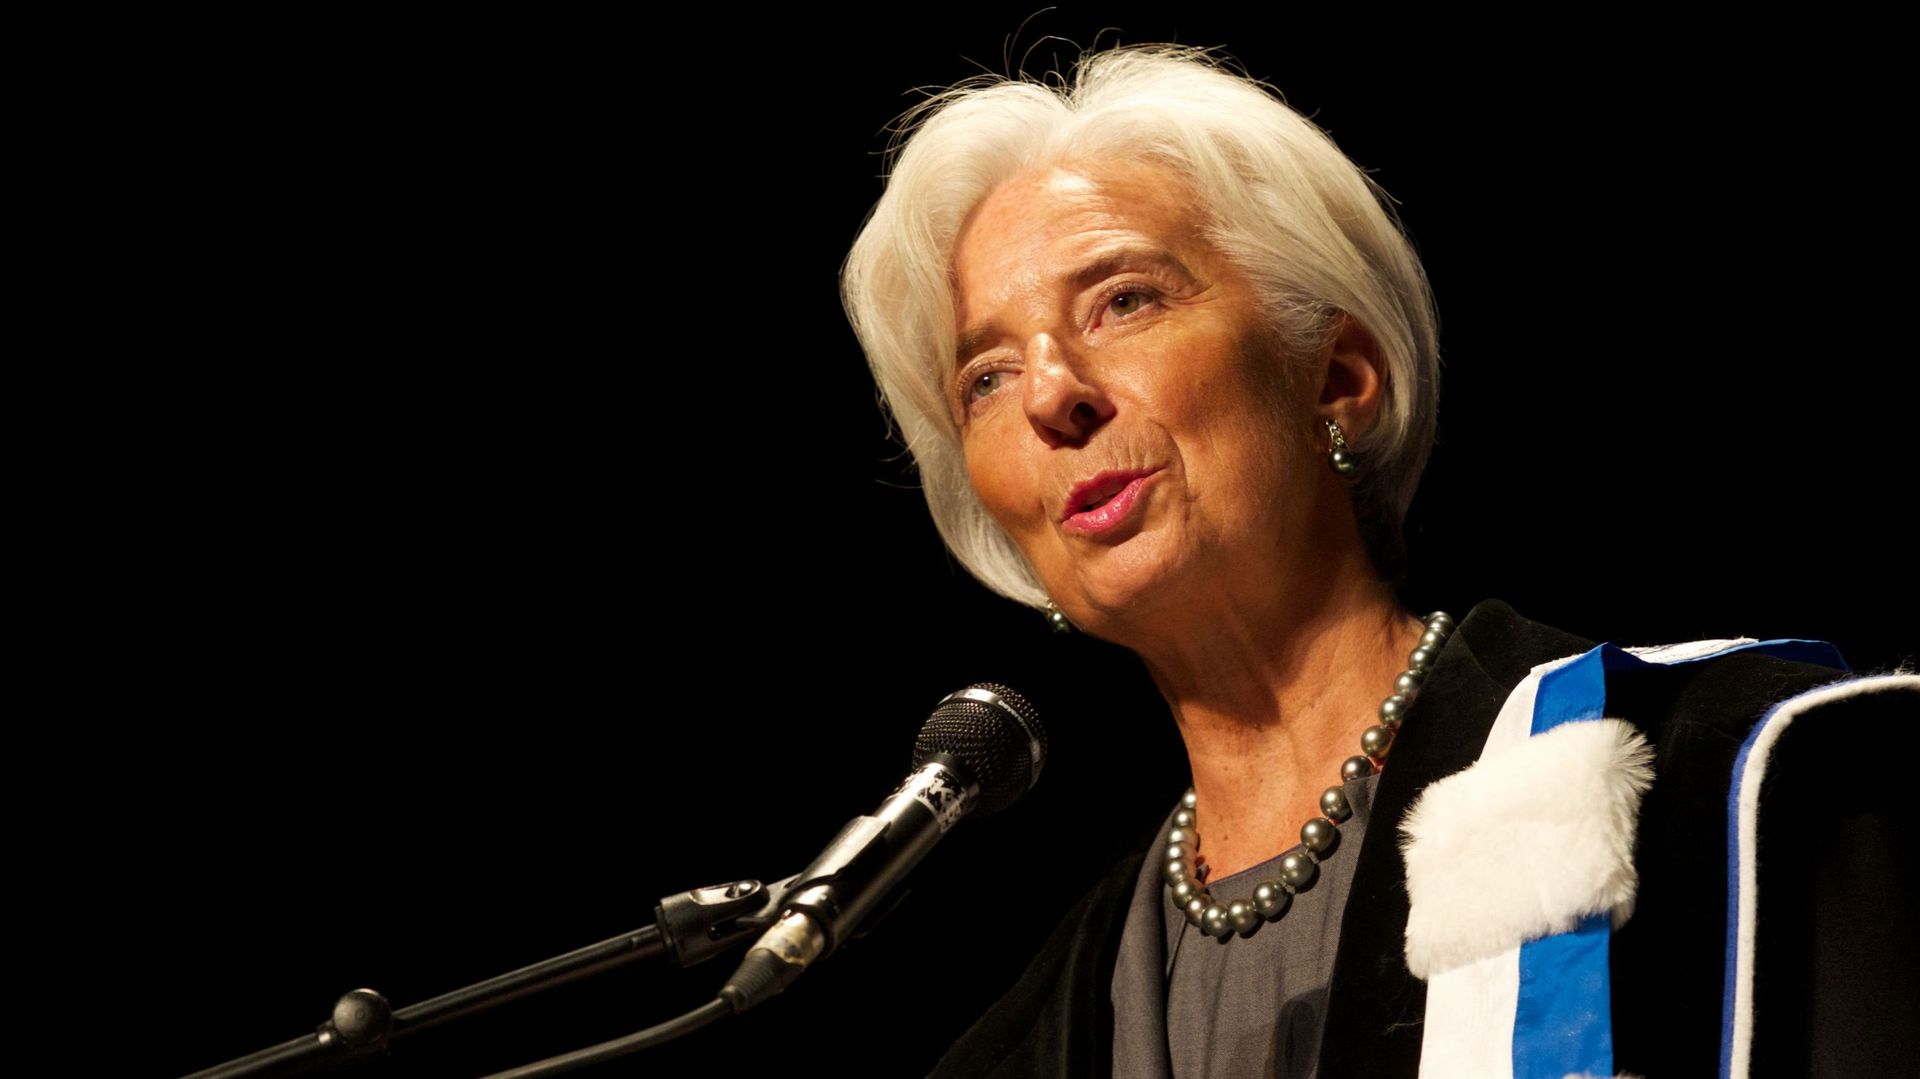 Le FMI nie avoir approuvé sa participation au plan d'aide grec